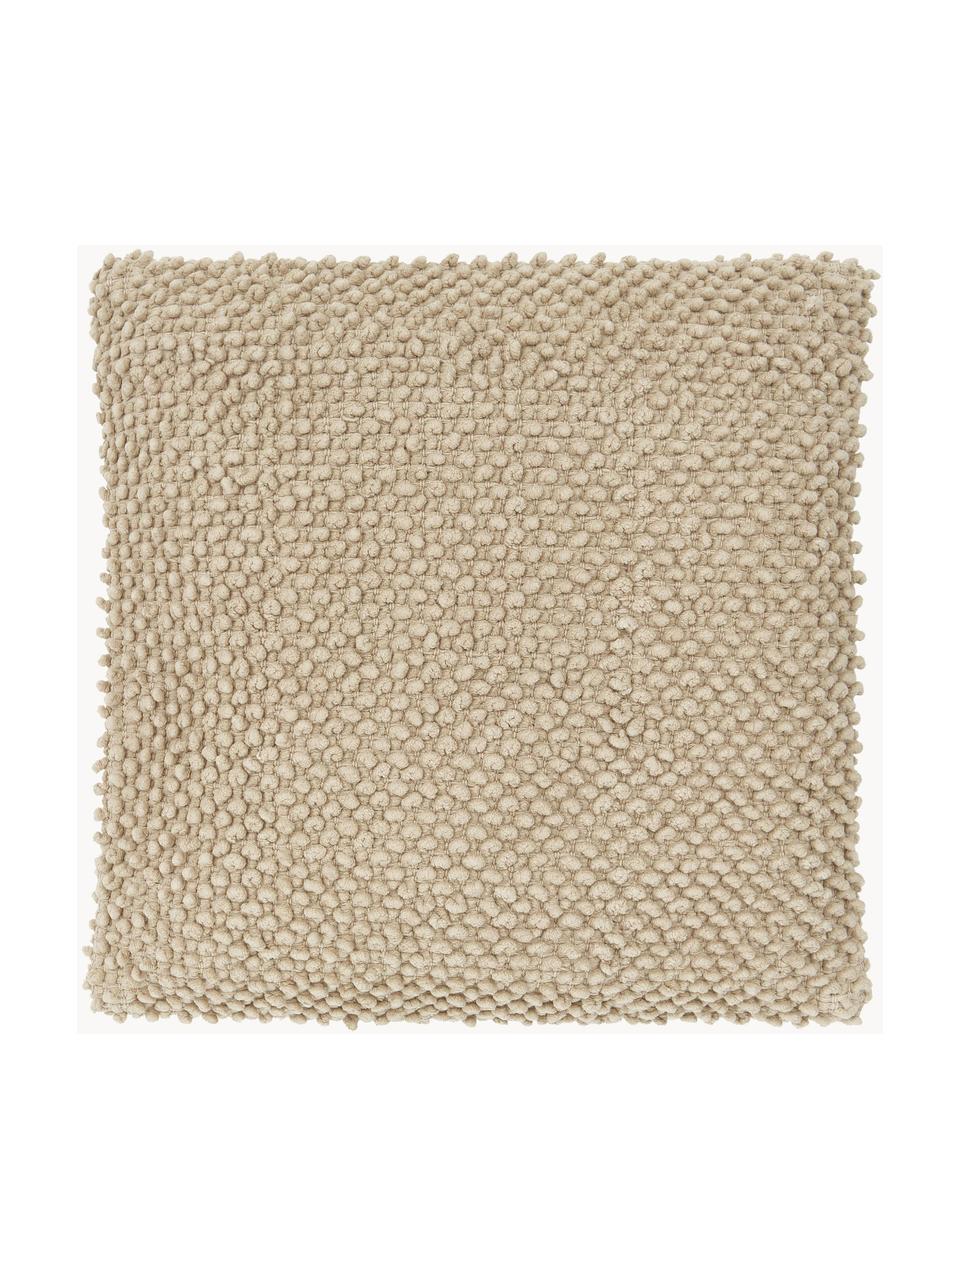 Kussenhoes Indi met gestructureerde oppervlak in taupe, 100% katoen, Taupe, B 45 x L 45 cm